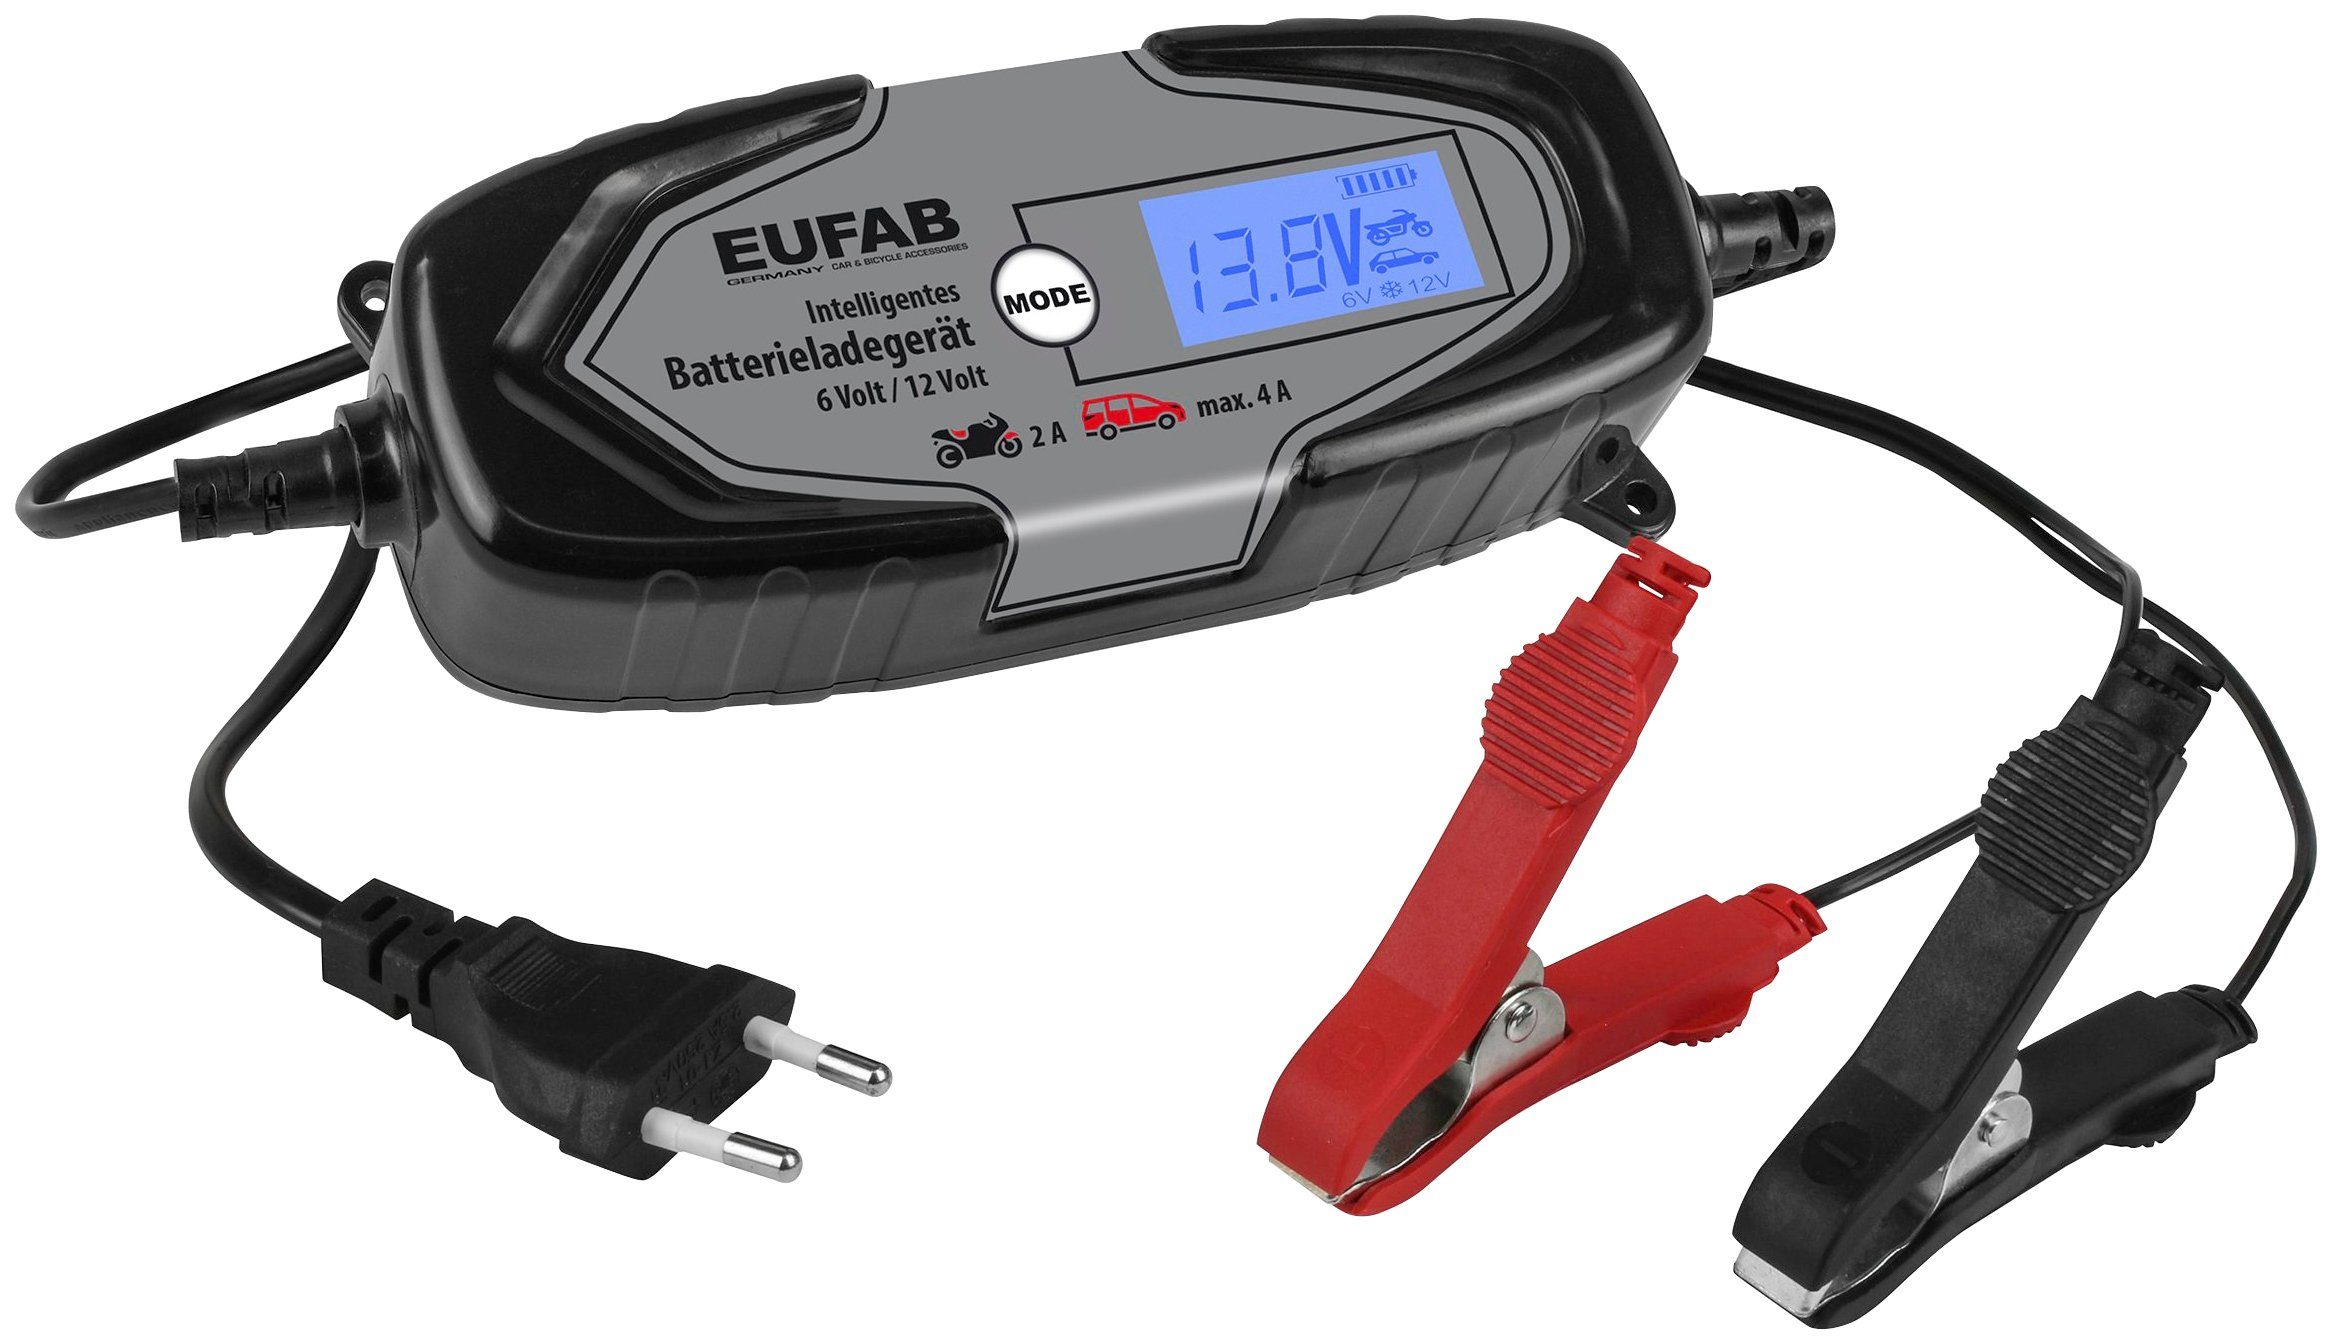 EUFAB EUFAB 16647 Autobatterie-Ladegerät (4000 mA)